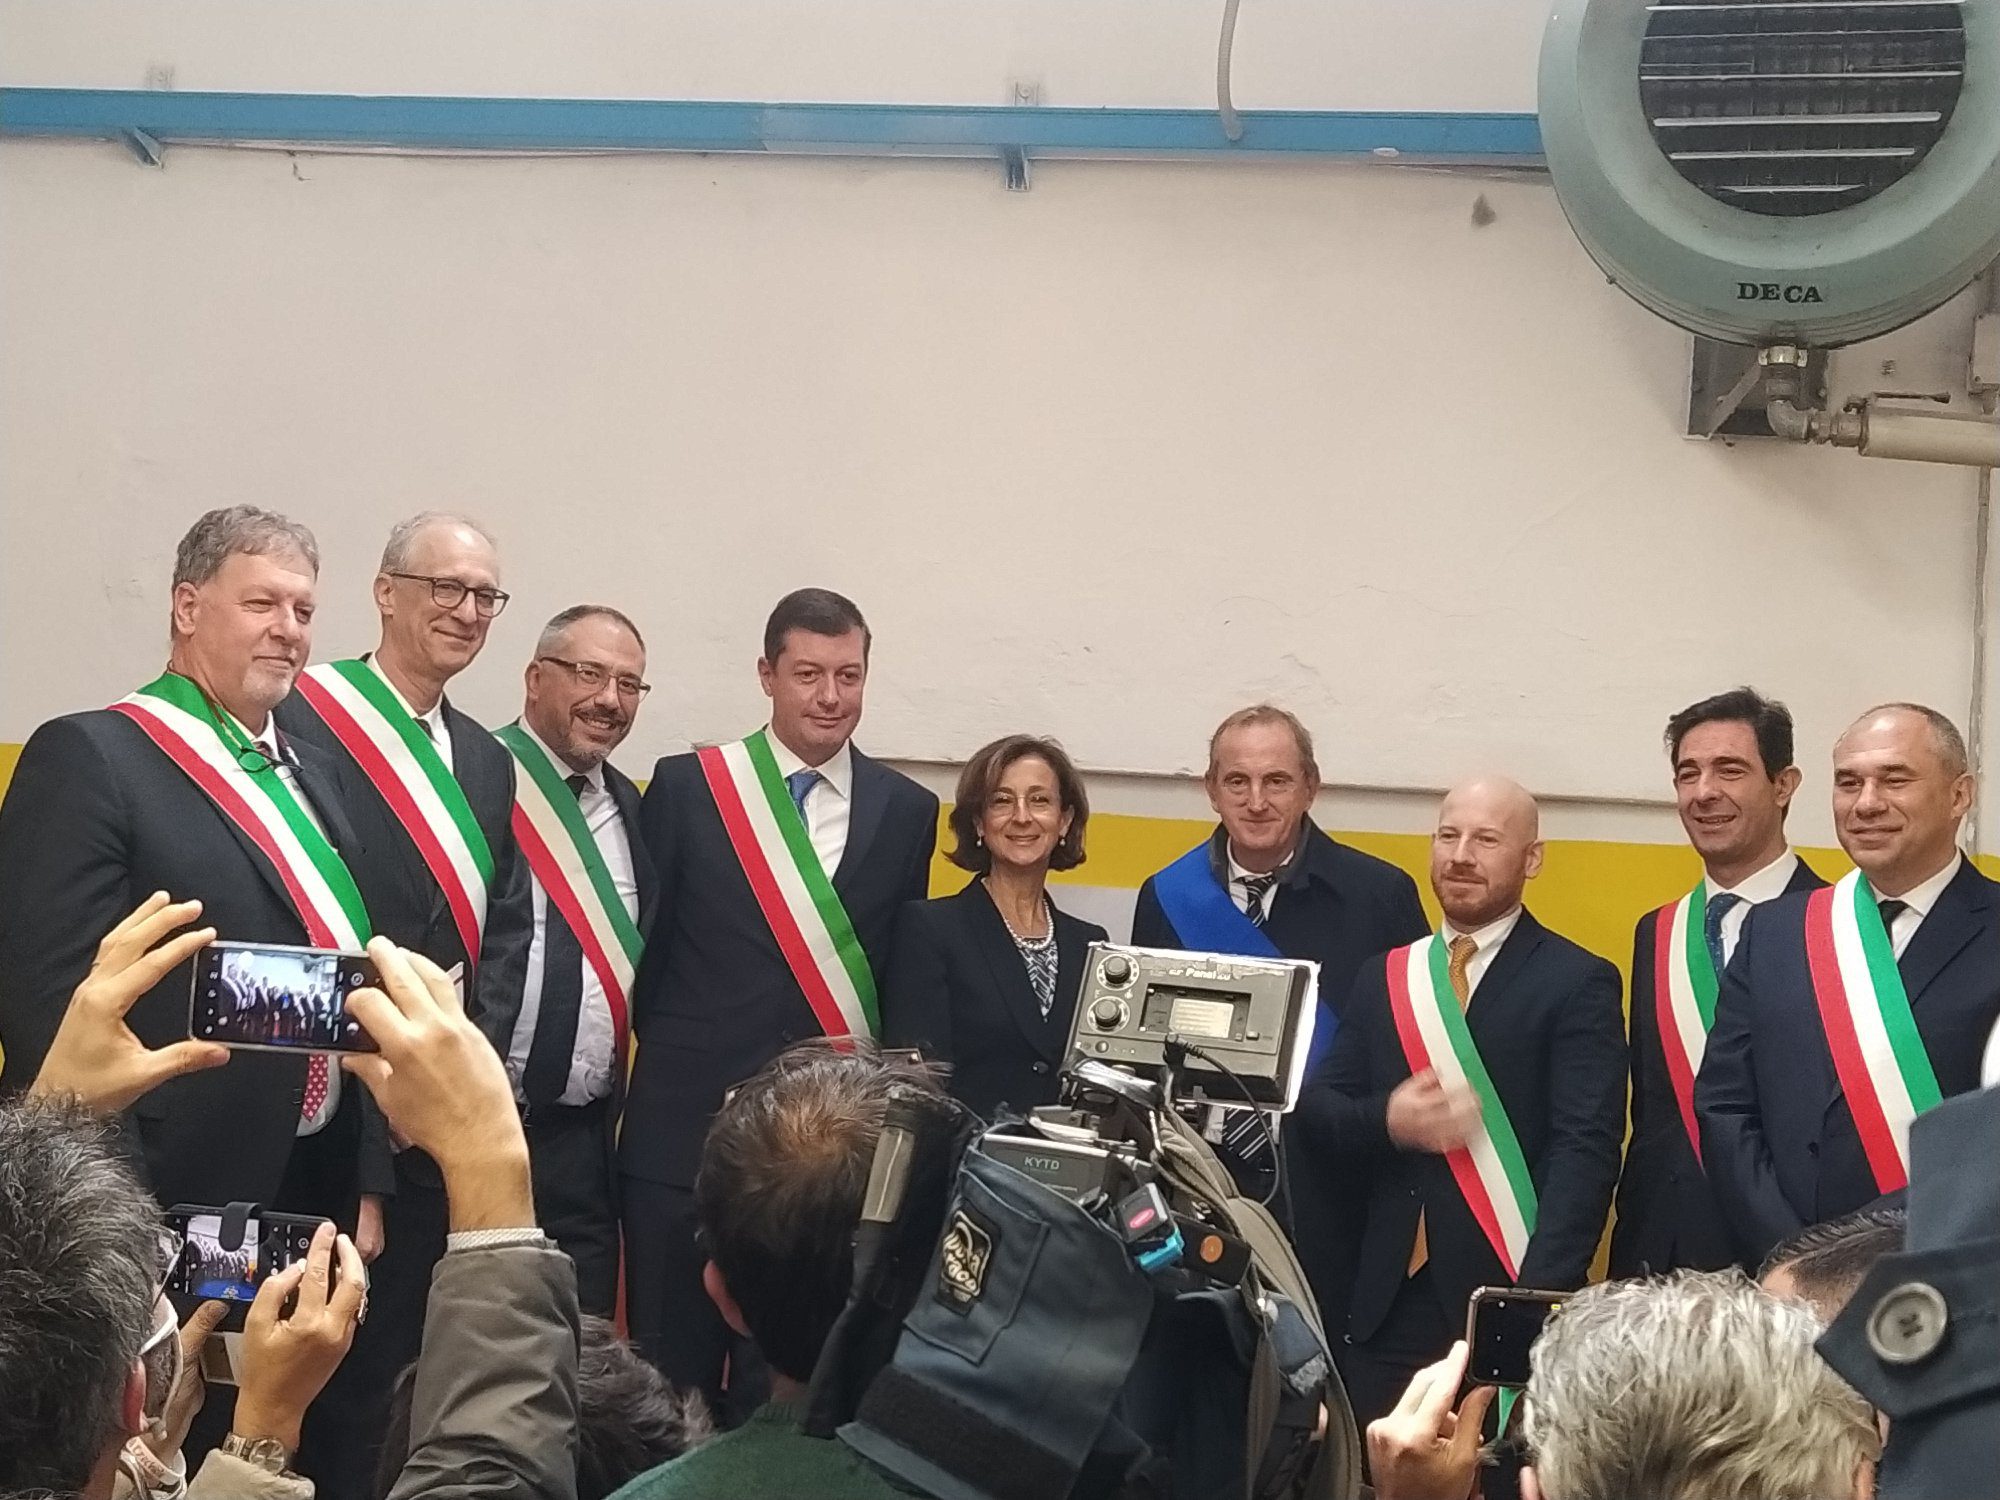 Il sindaco Airoldi da Saronno a Fagnano: incontro col ministro della Giustizia